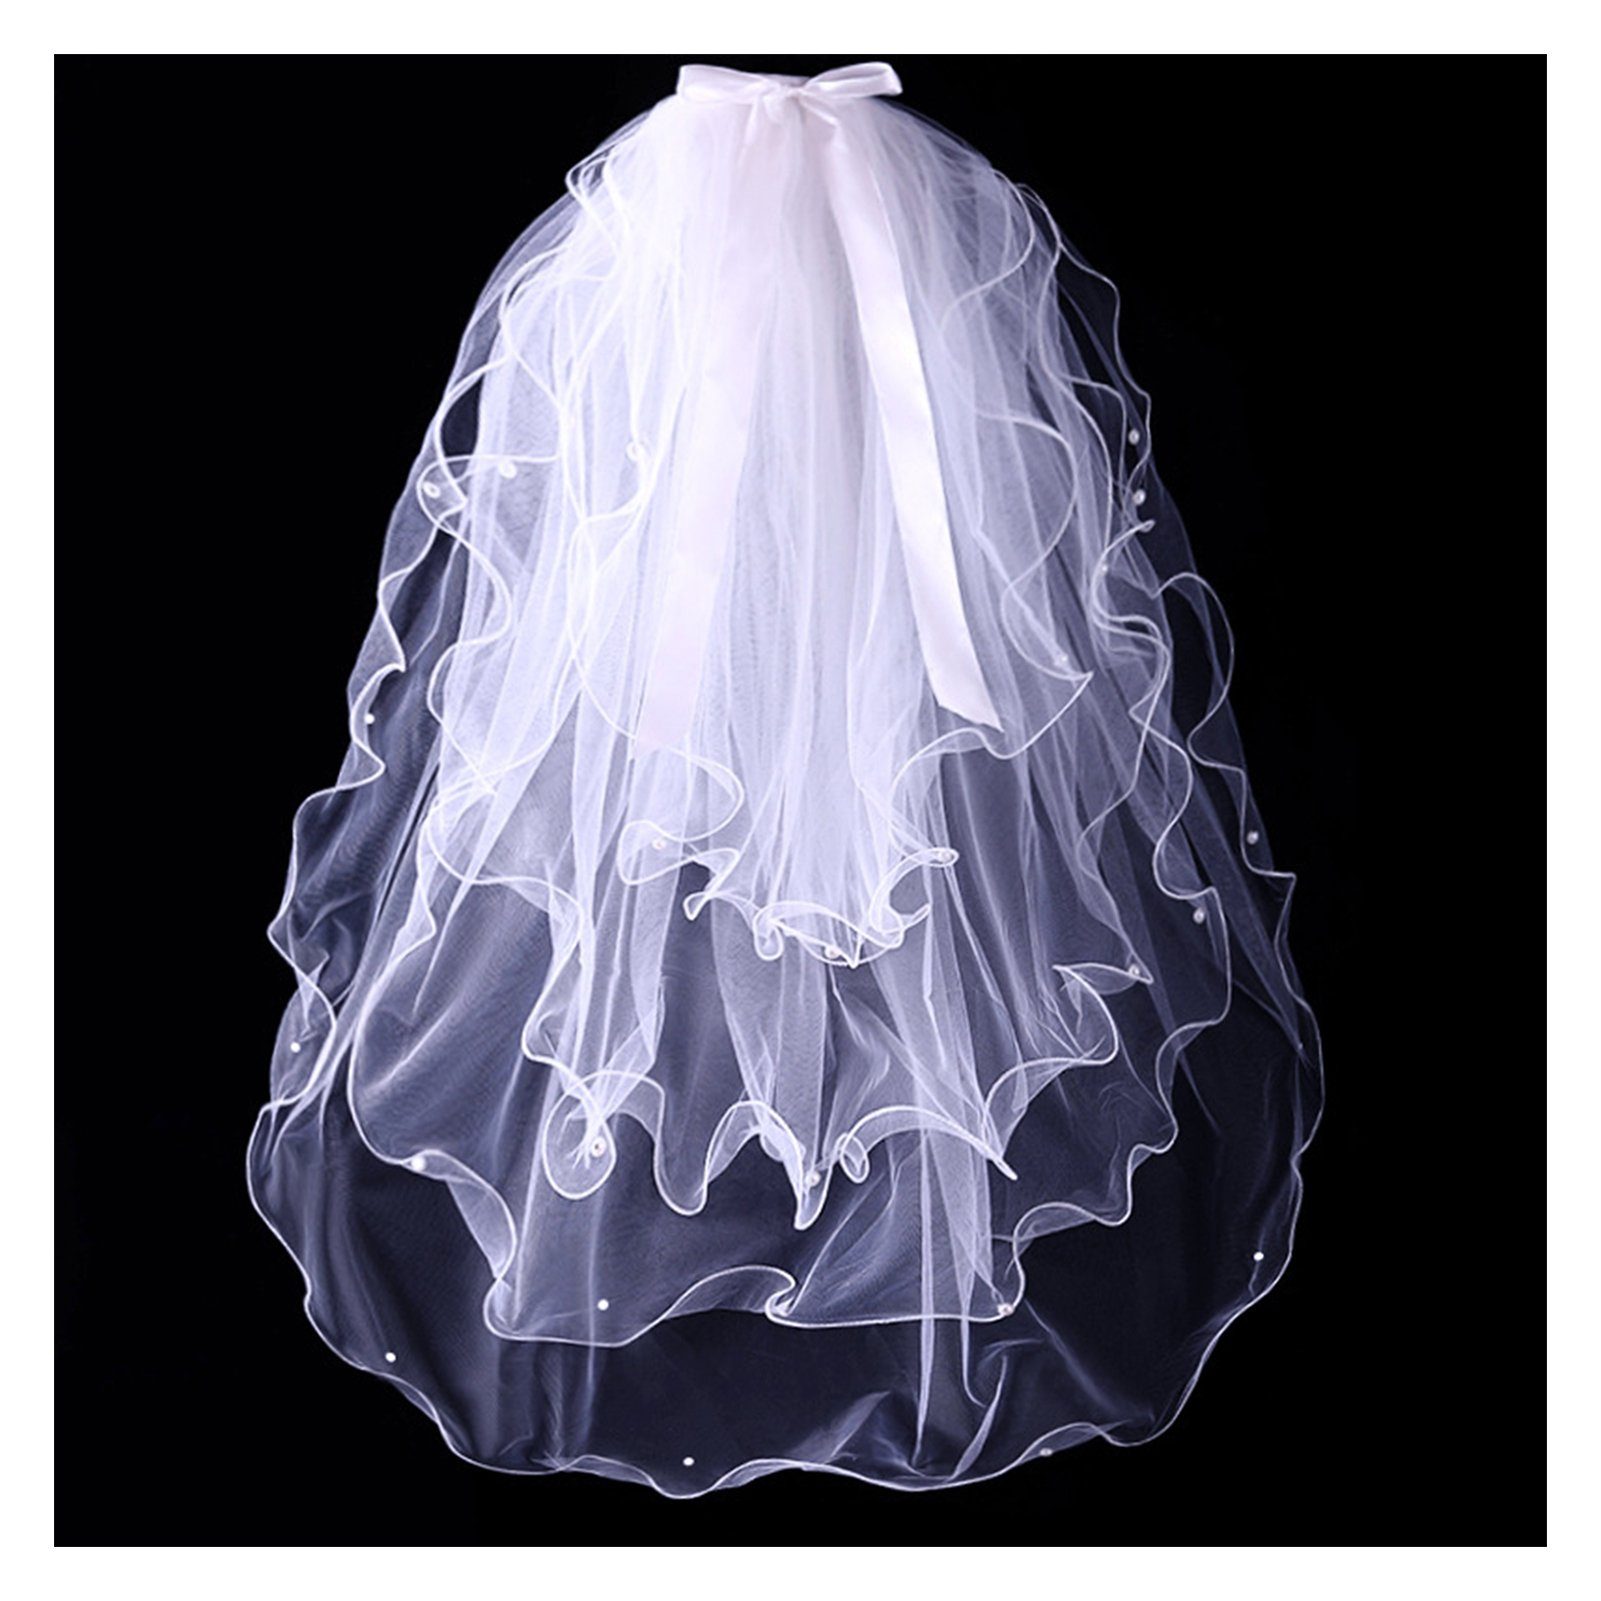 Perlen-Kurzschleier, Damen, Schleier Für Einfacher Hochzeitsschleier B Blusmart 4-stufiger white Brautschleier